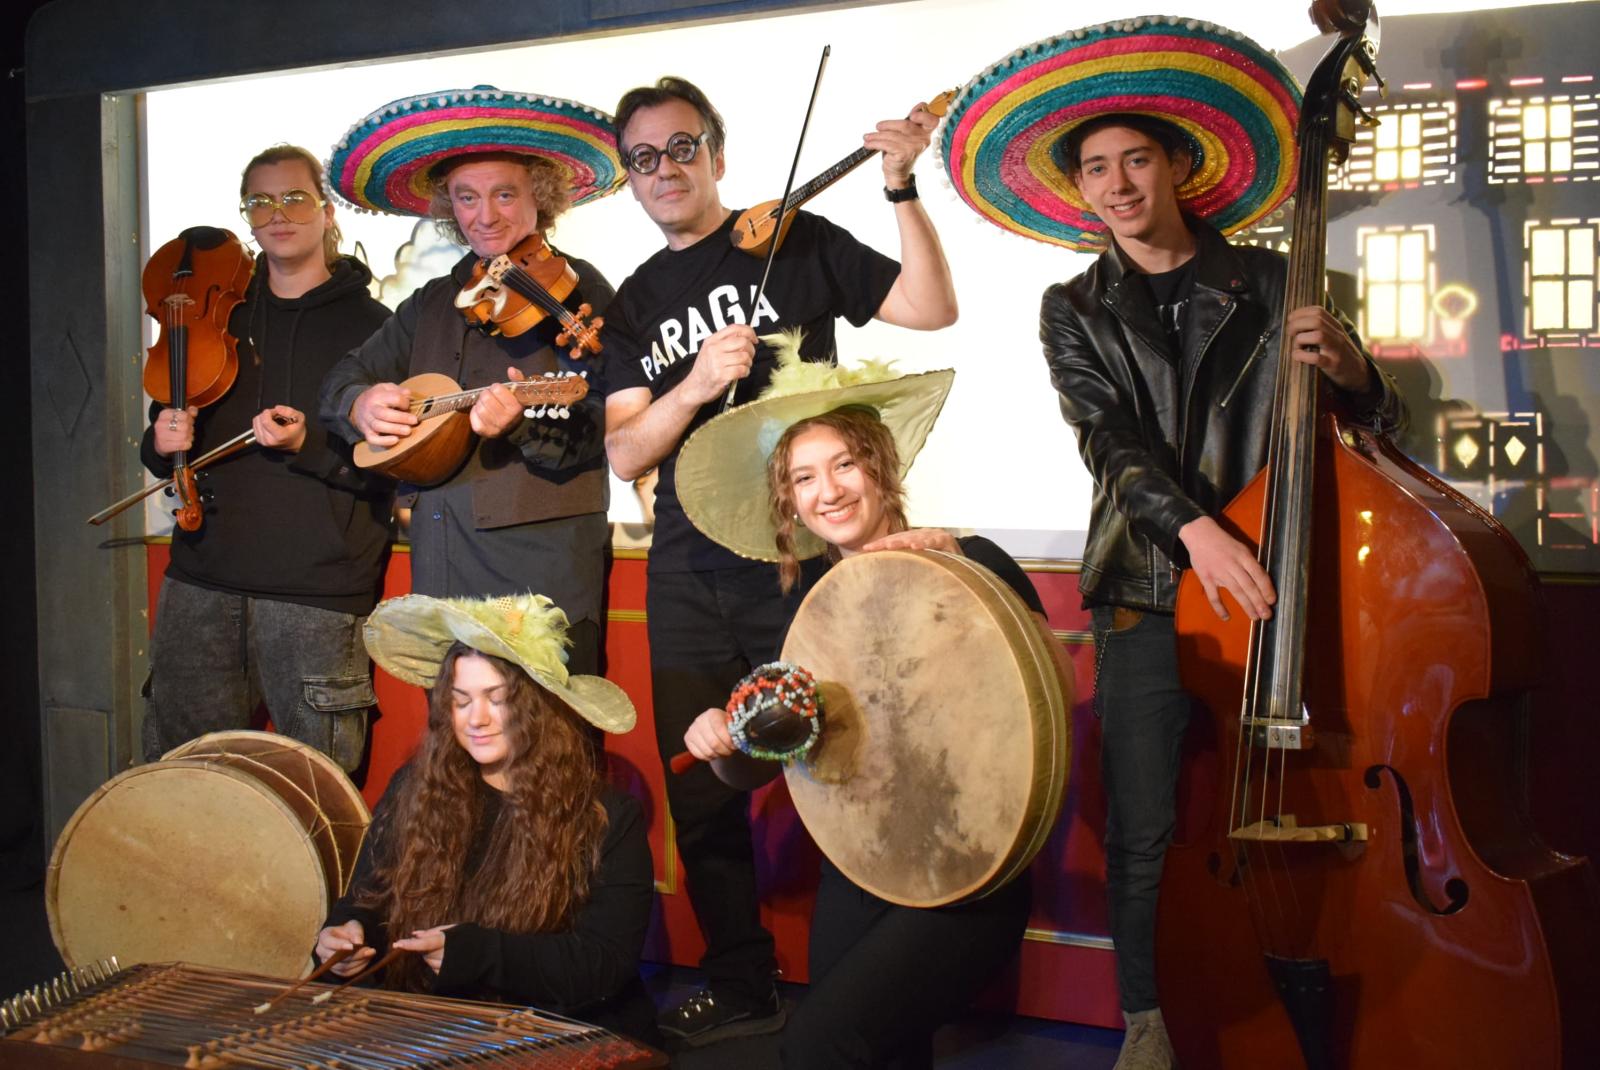 "Καρναβάλι στην Paraga" από το θέατρο σκιών του Τάσου Κώνστα και τους Paraga Band